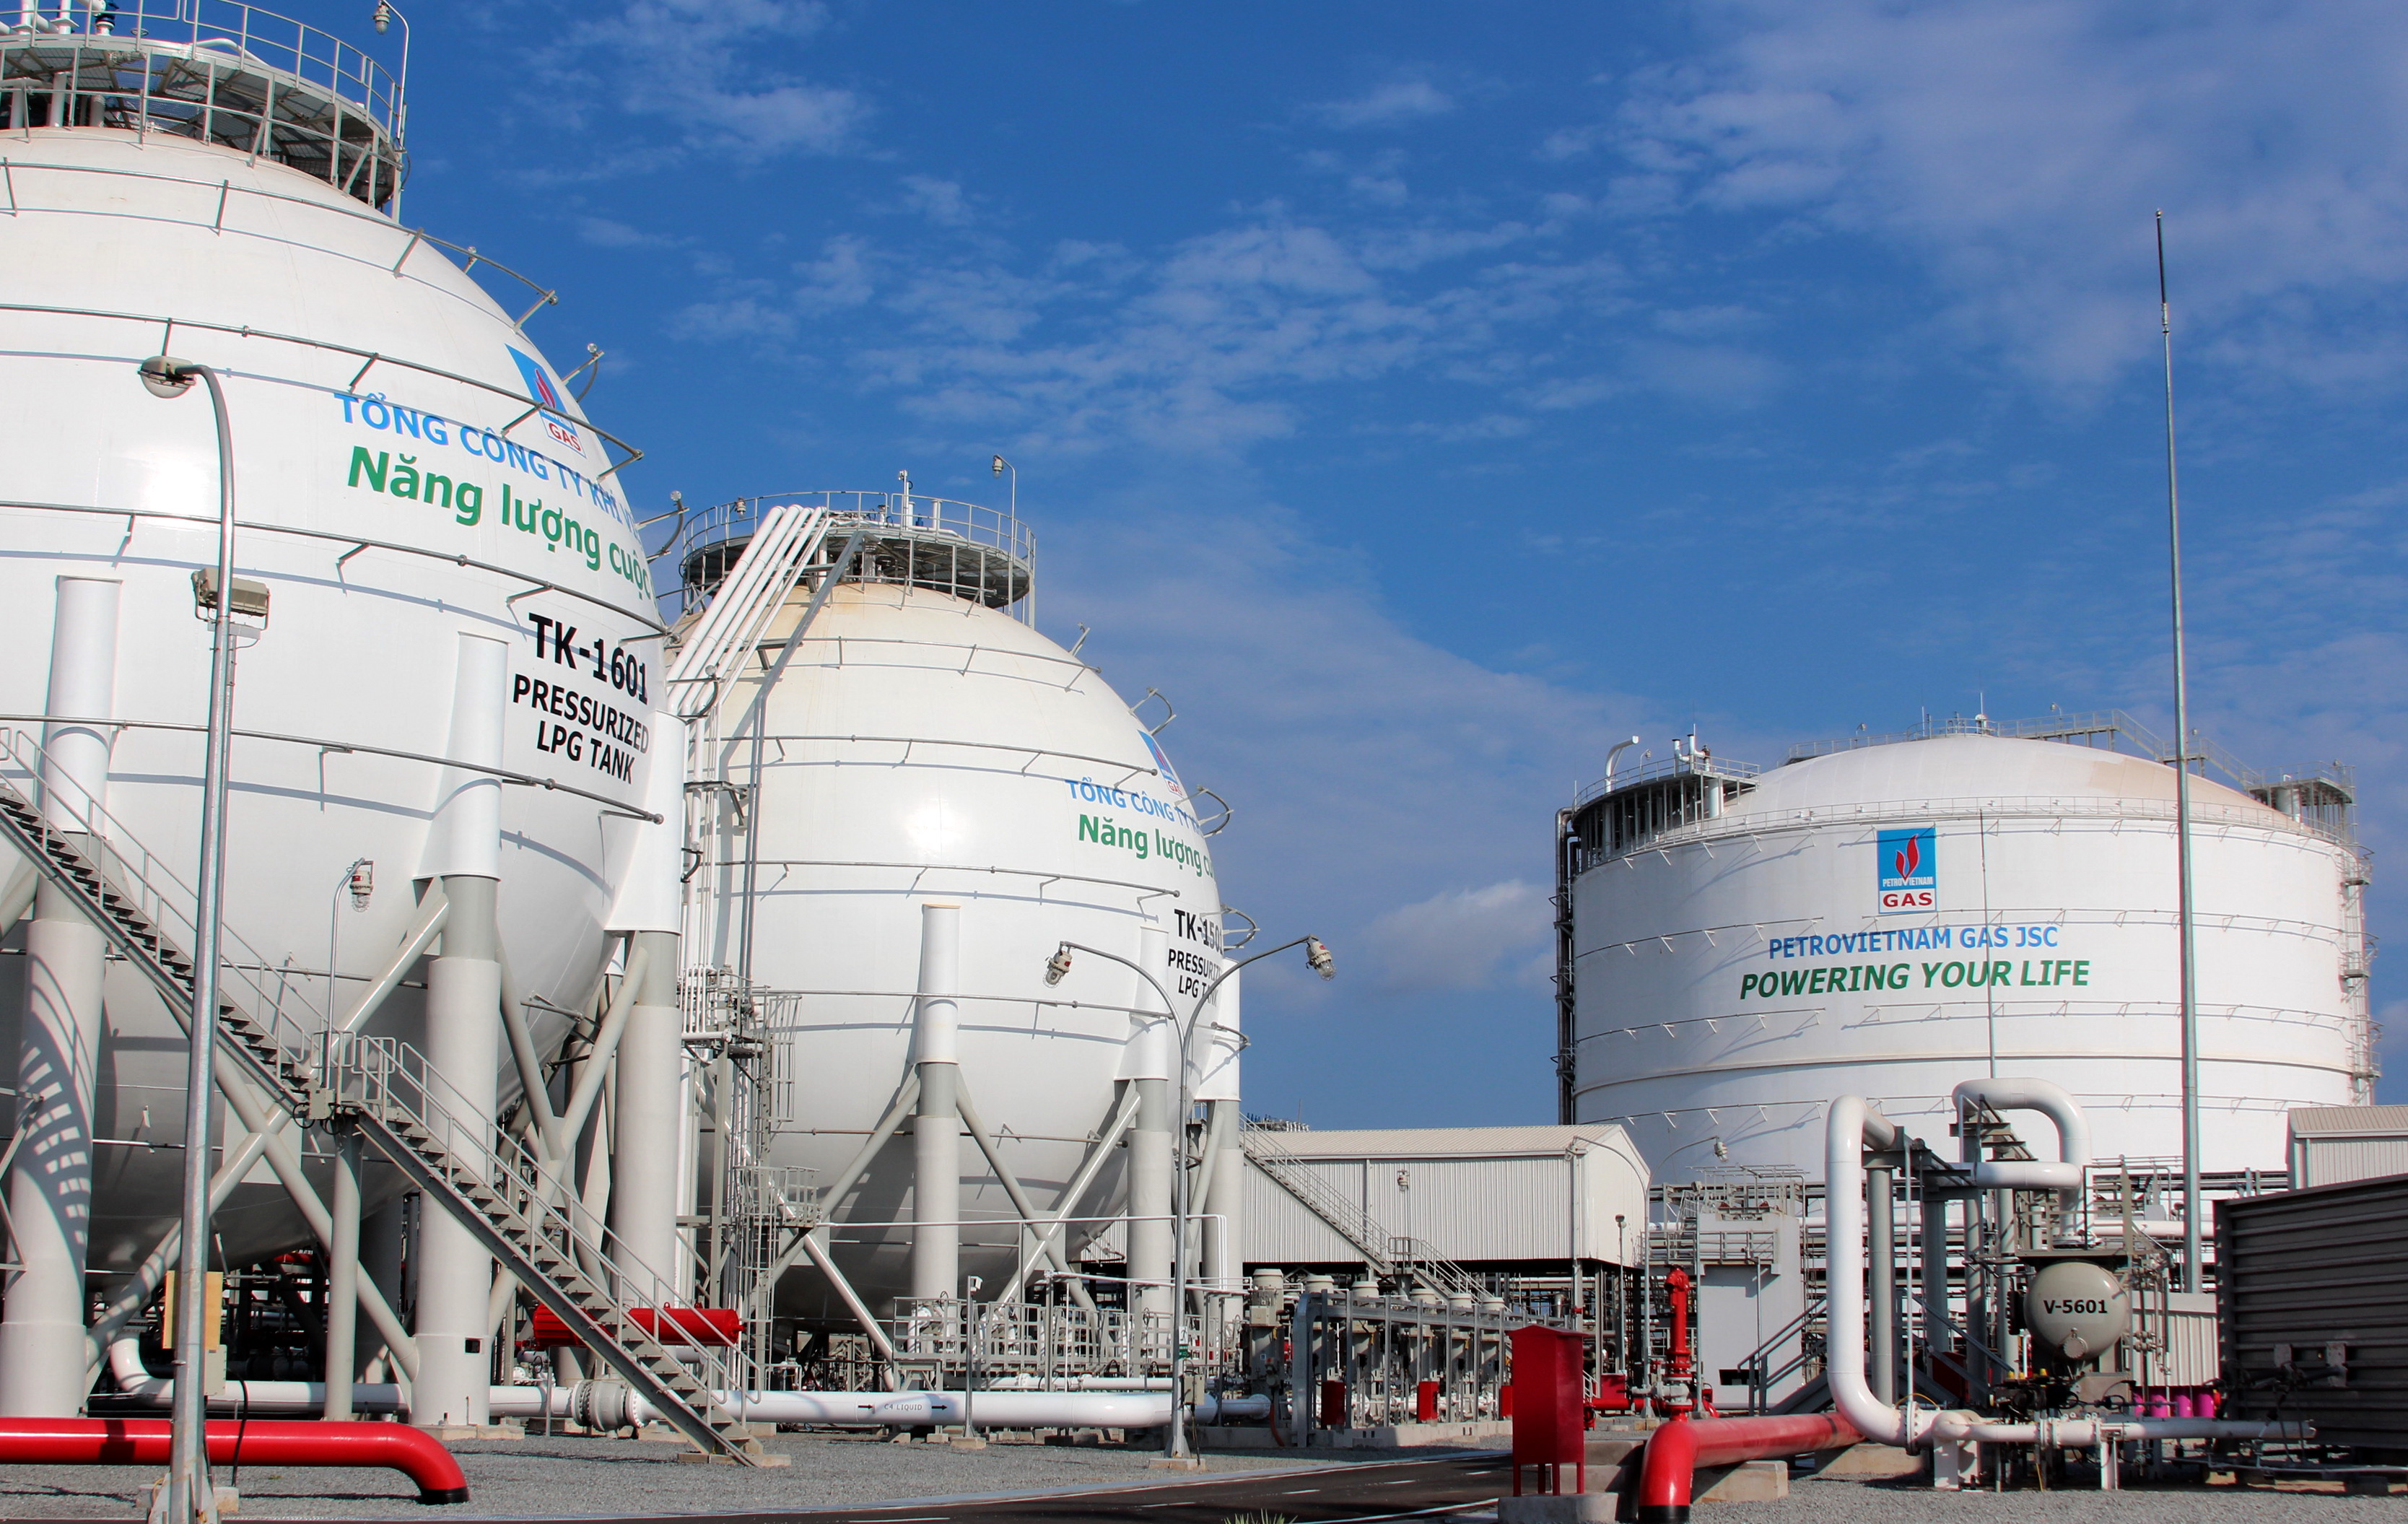 Quy chuẩn kỹ thuật quốc gia về an toàn kho chứa khí thiên nhiên hóa lỏng (LNG) trên bờ